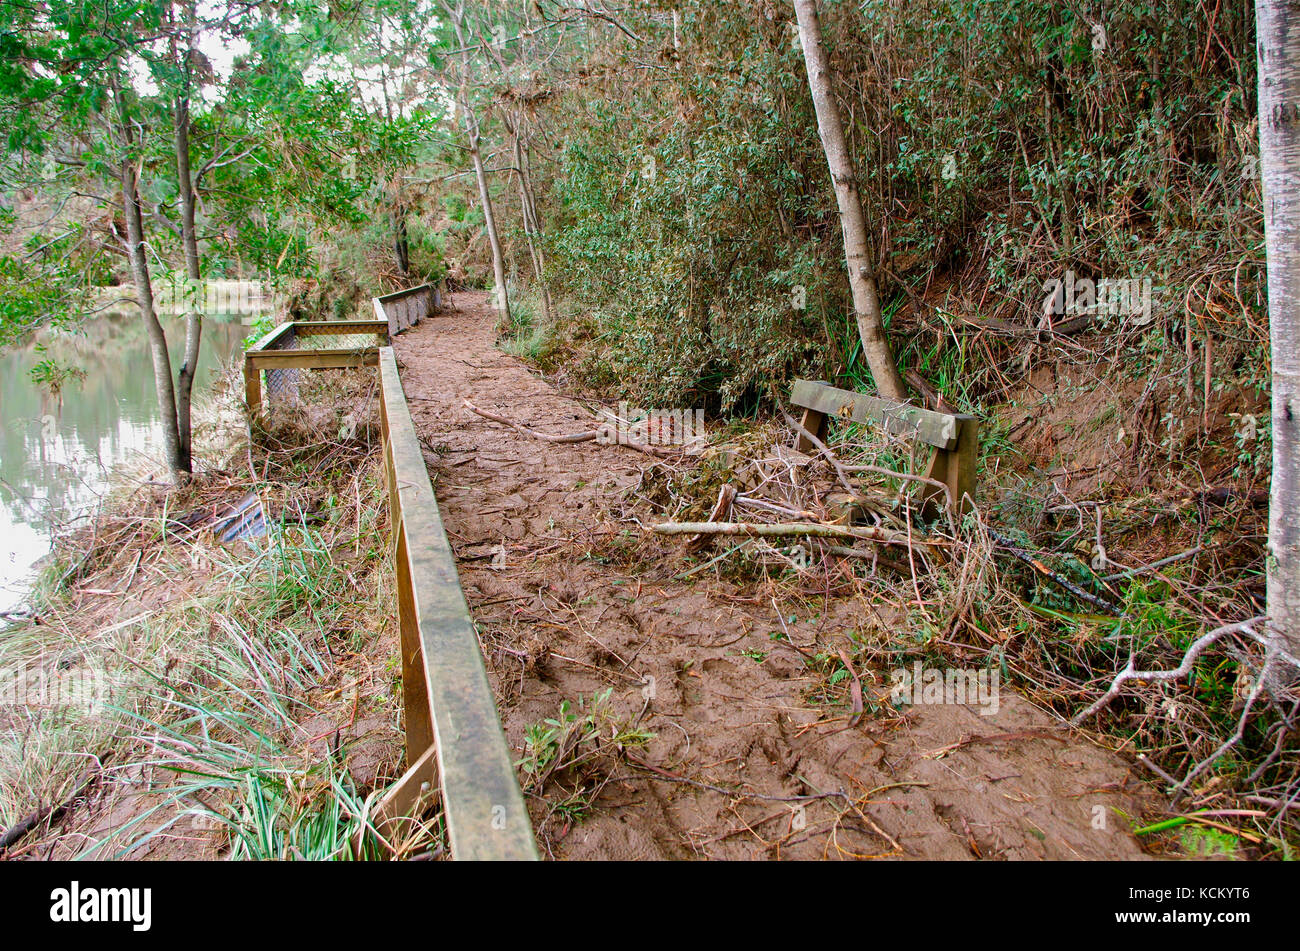 Auf dem beschädigten Platypus Walk am Ufer des Mersey River stapelten sich Hochwasserrückstände. Warrawee Forest Reserve, Latrobe, nordwestlicher Tasmanien, Australien Stockfoto